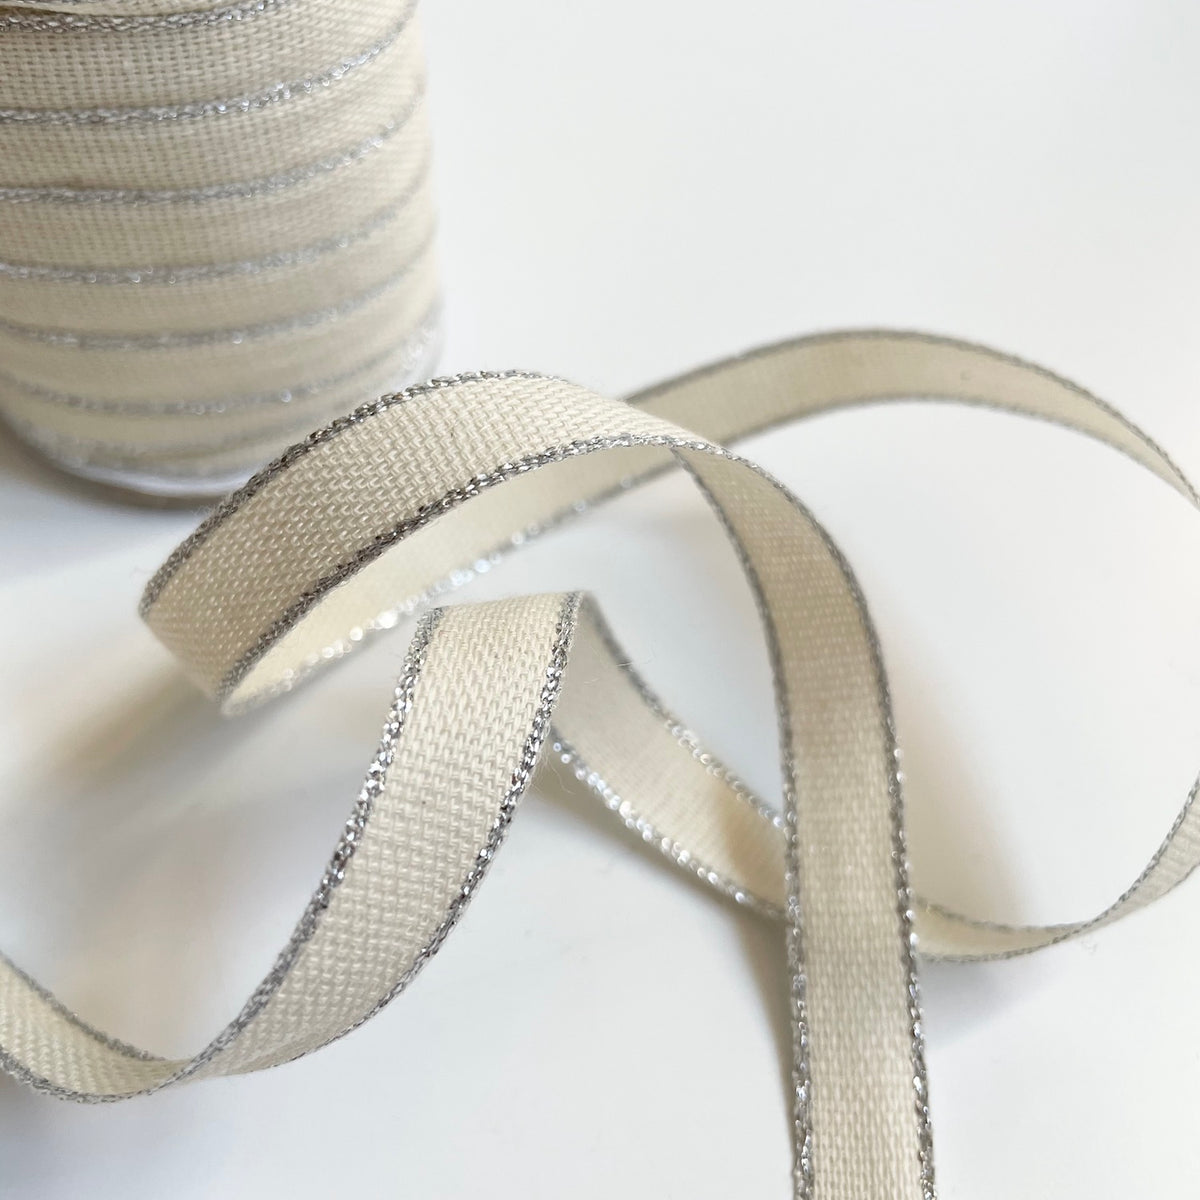 Drittofilo Cotton Ribbon - Natural / Silver: Studio Carta – Bolt & Spool